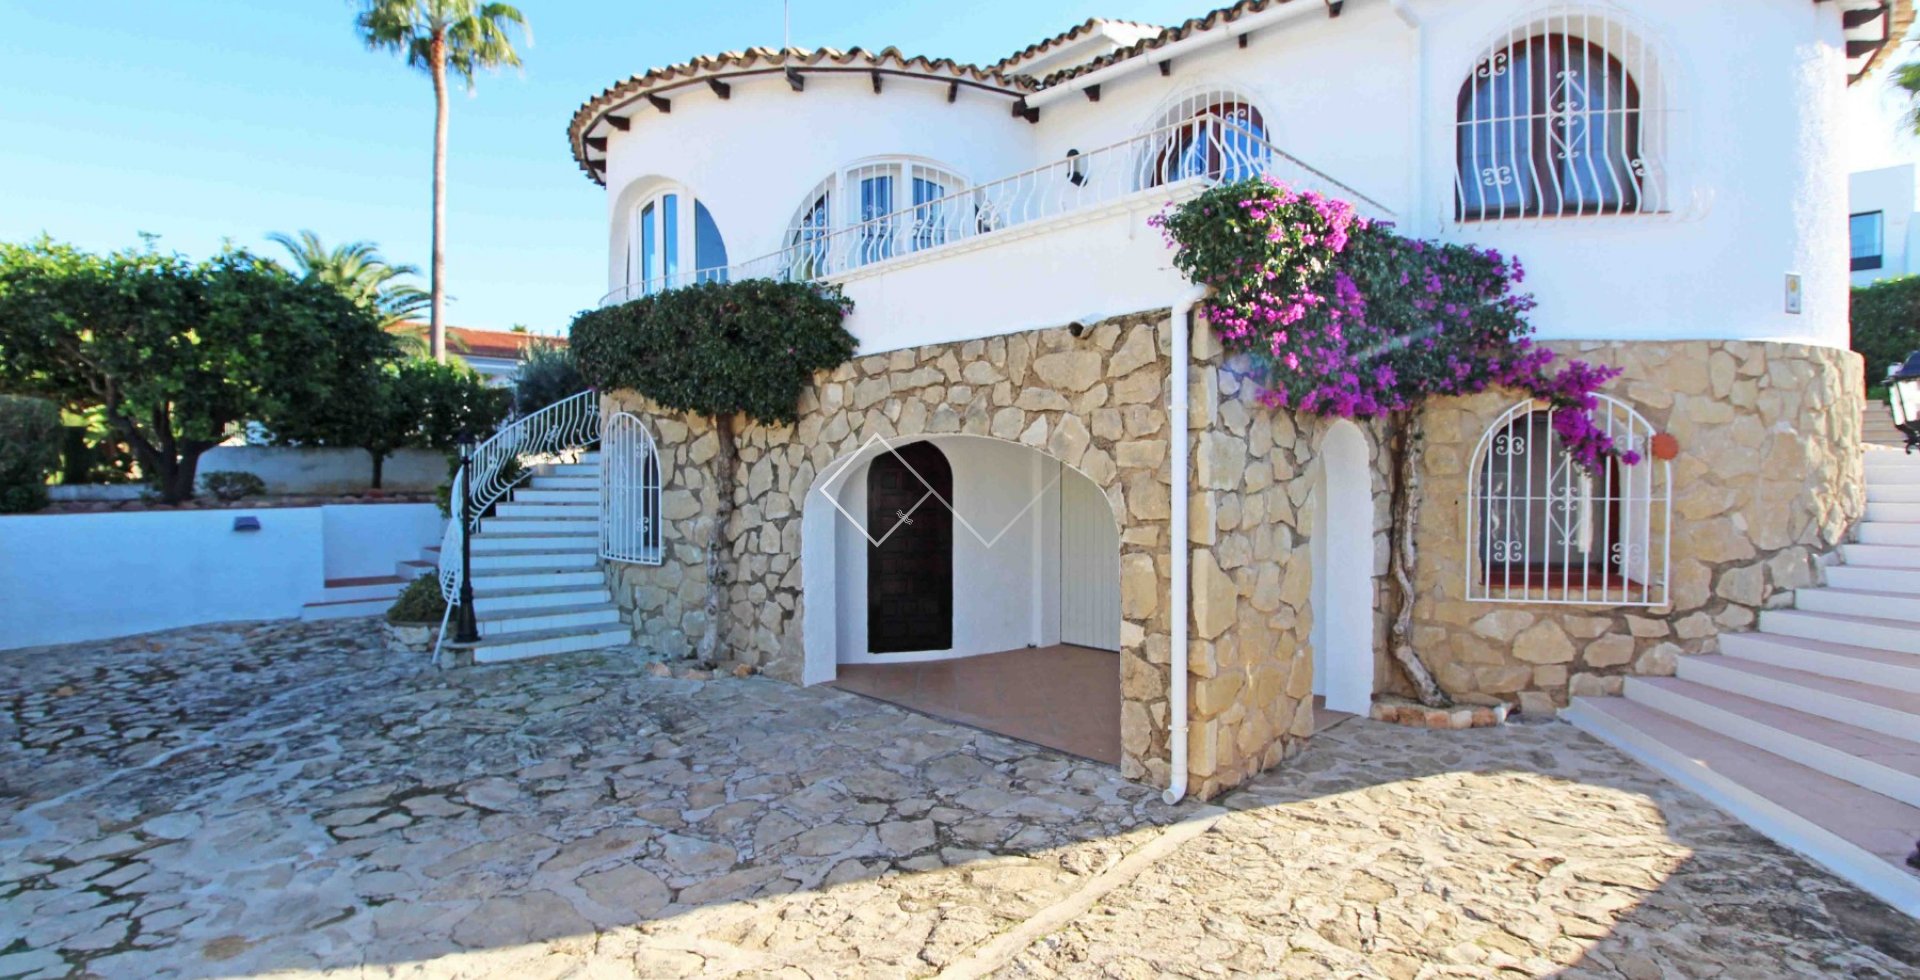 Traditionelle Villa zu verkaufen in Benissa, San Jaime - mit Mietlizenz